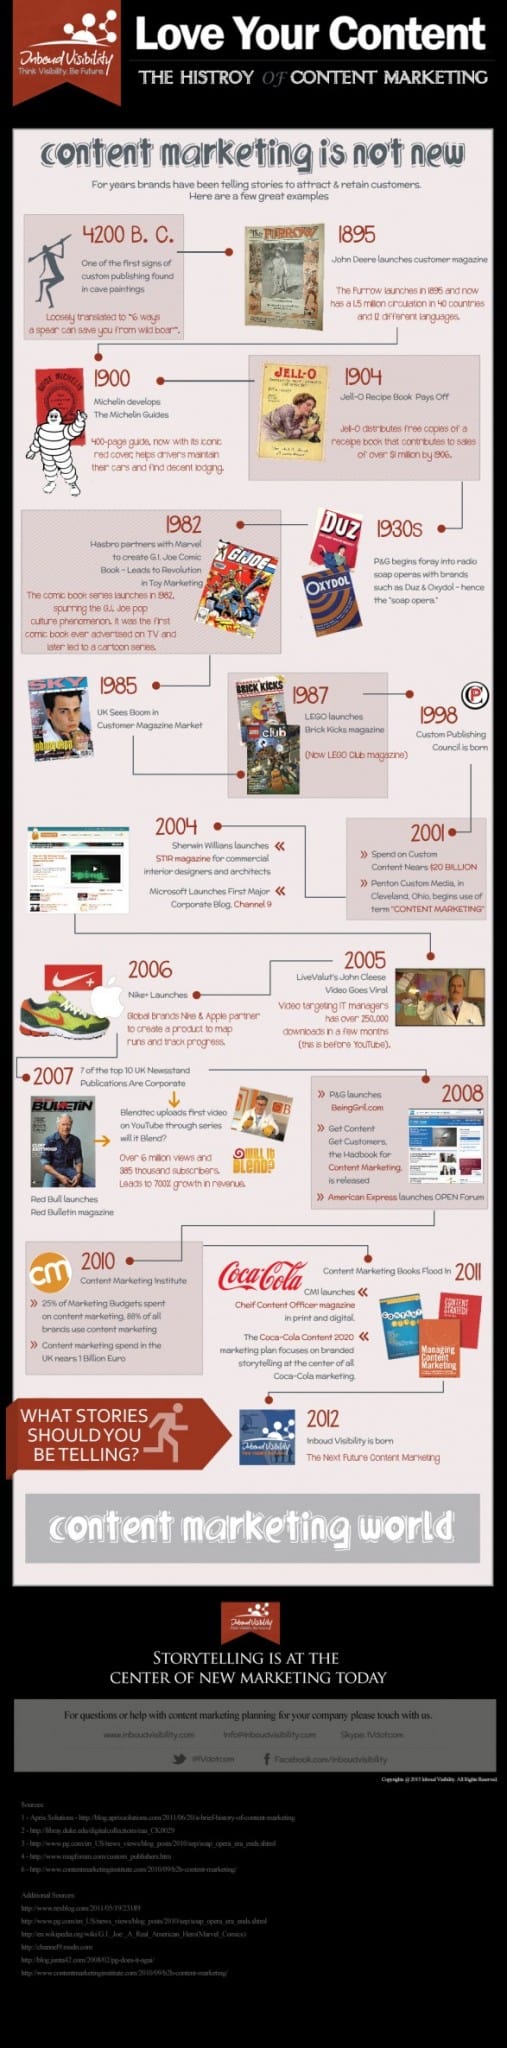 Content marketing geschiedenis infographic